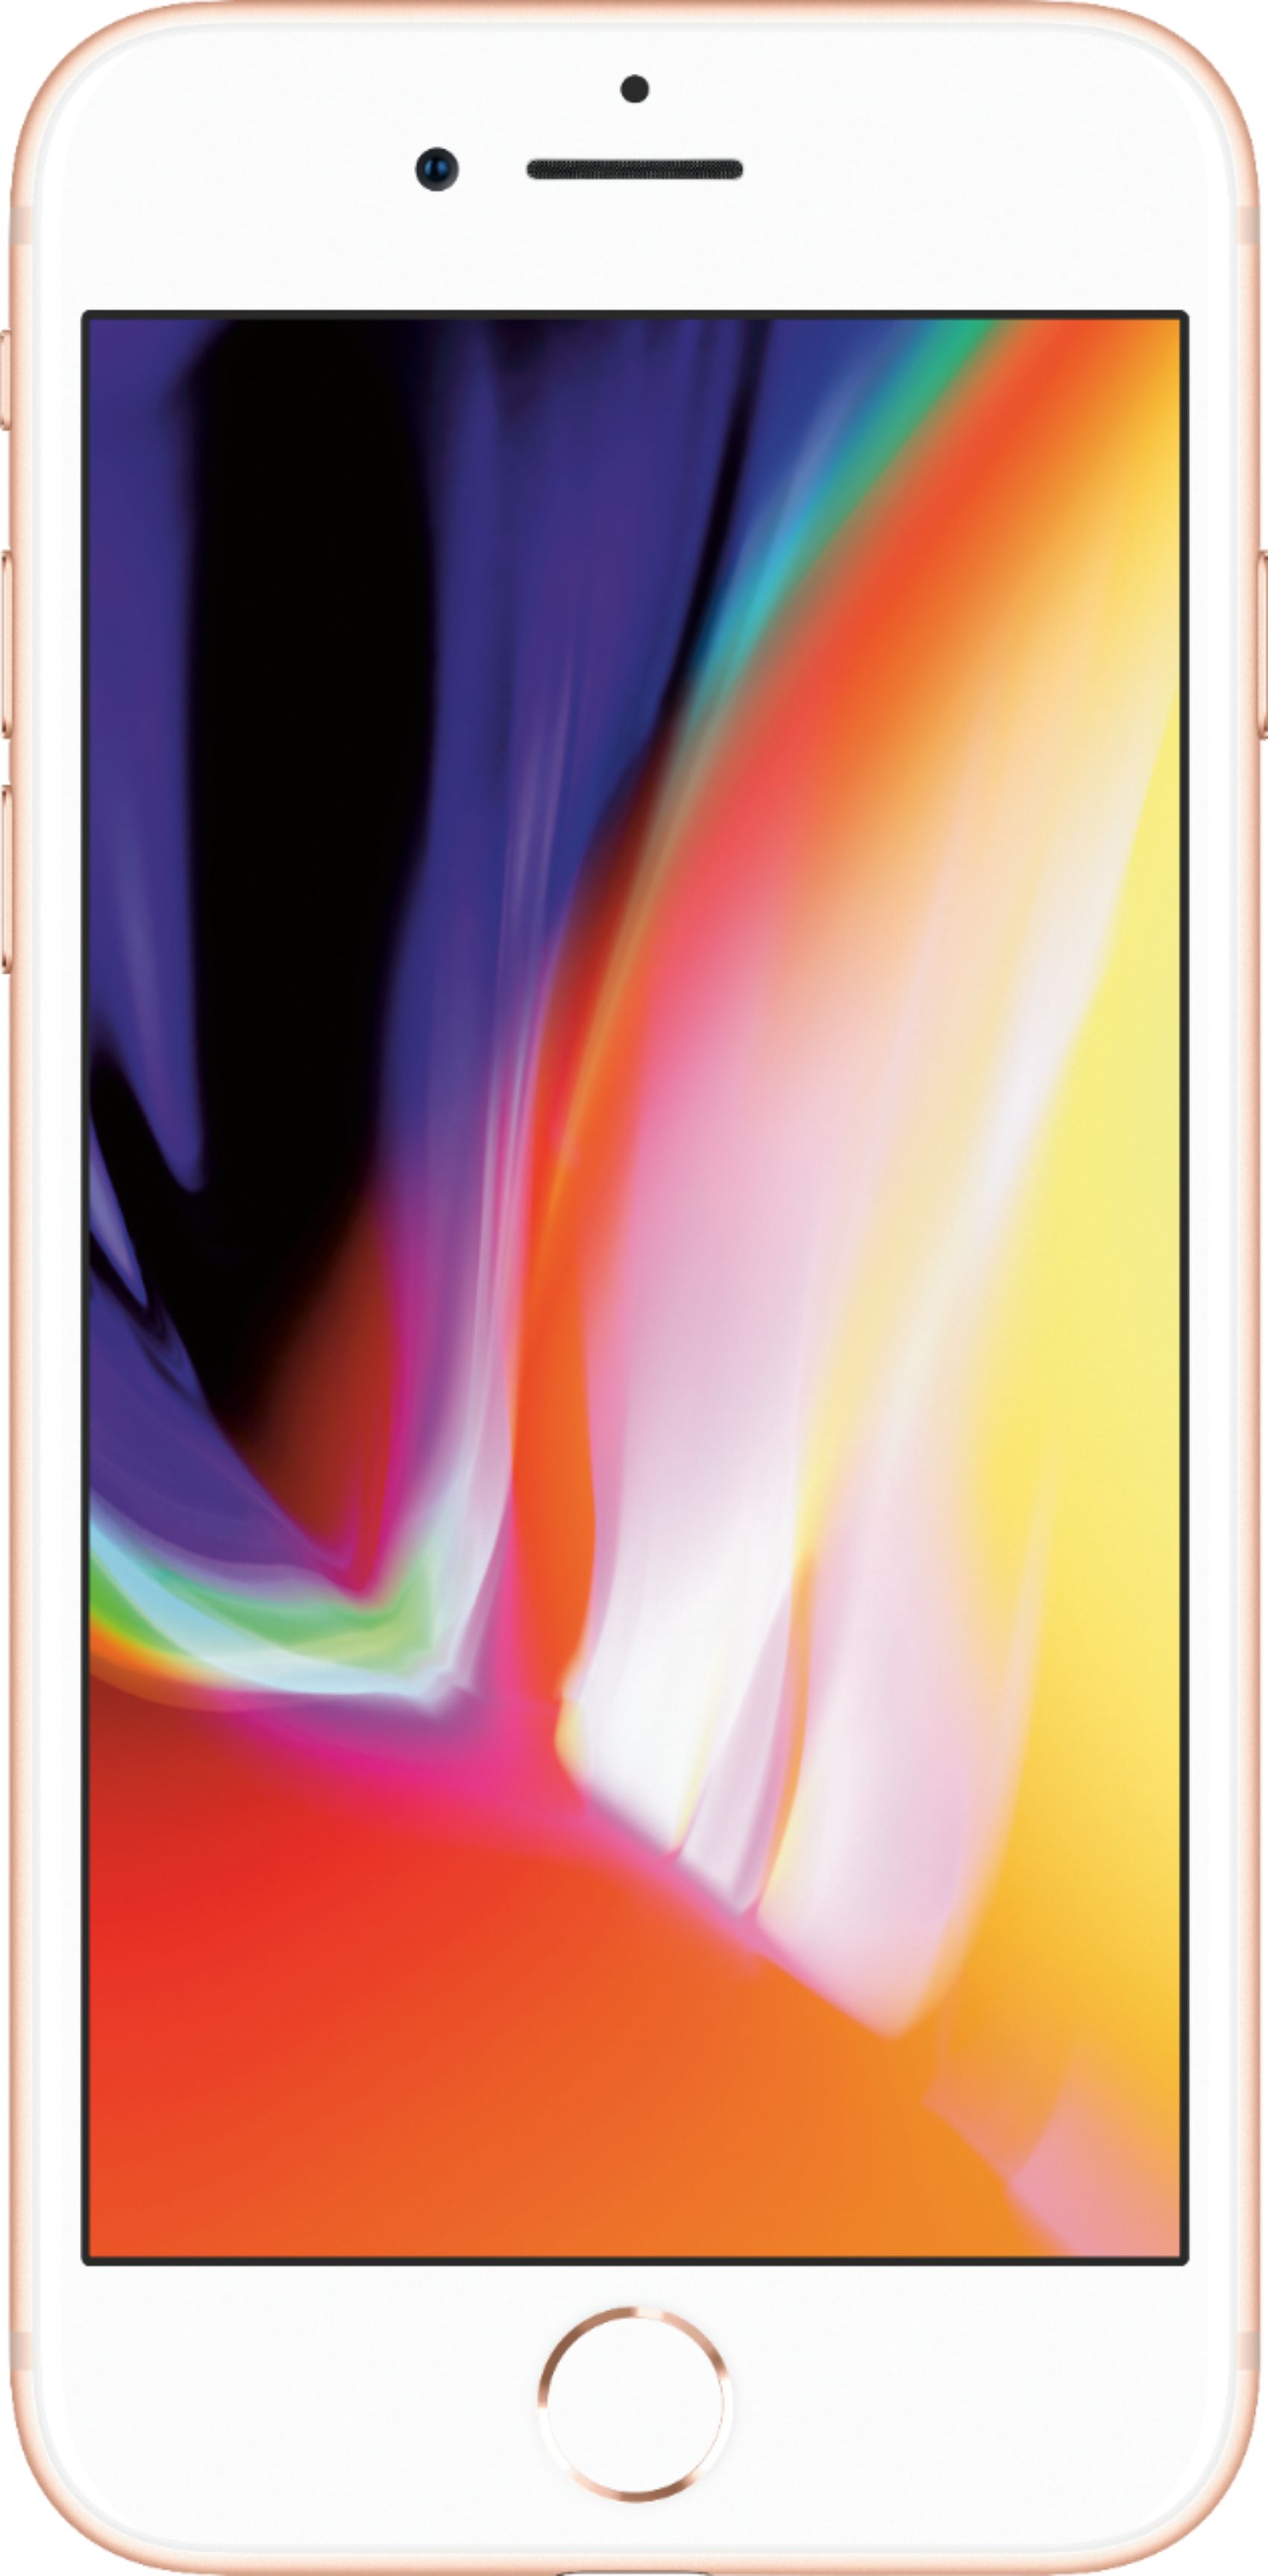 スマートフォン/携帯電話 スマートフォン本体 Apple iPhone 8 64GB Gold (AT&T) MQ6M2LL/A - Best Buy